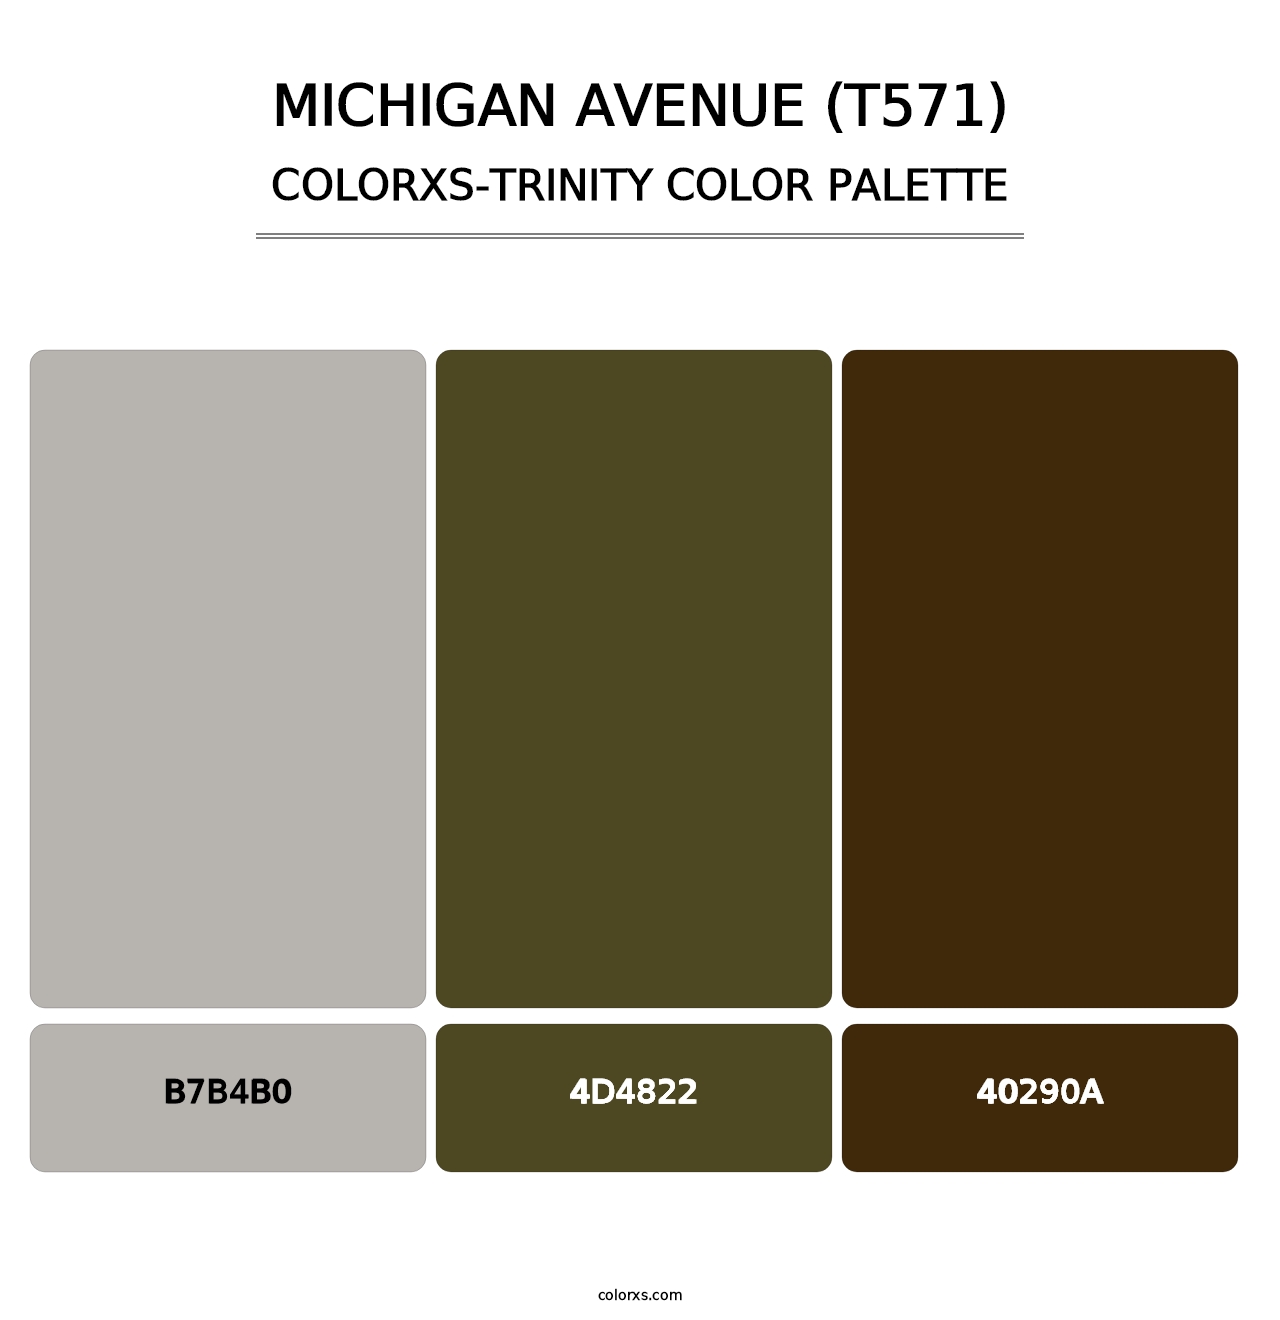 Michigan Avenue (T571) - Colorxs Trinity Palette